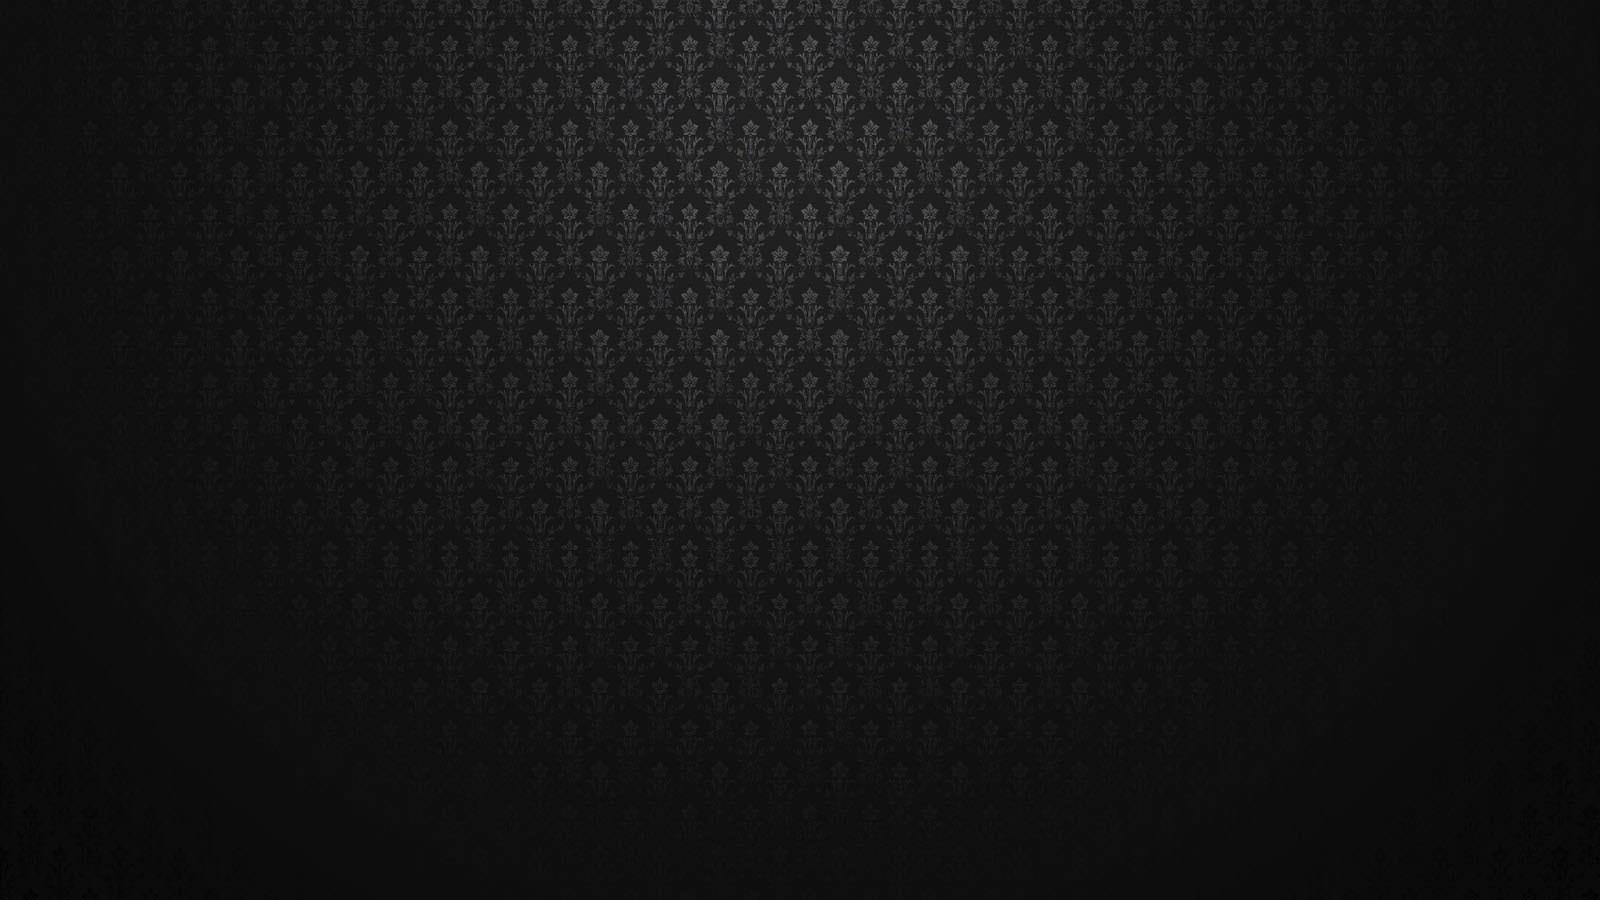 Full Dark Black Wallpaper 4k - Infoupdate.org